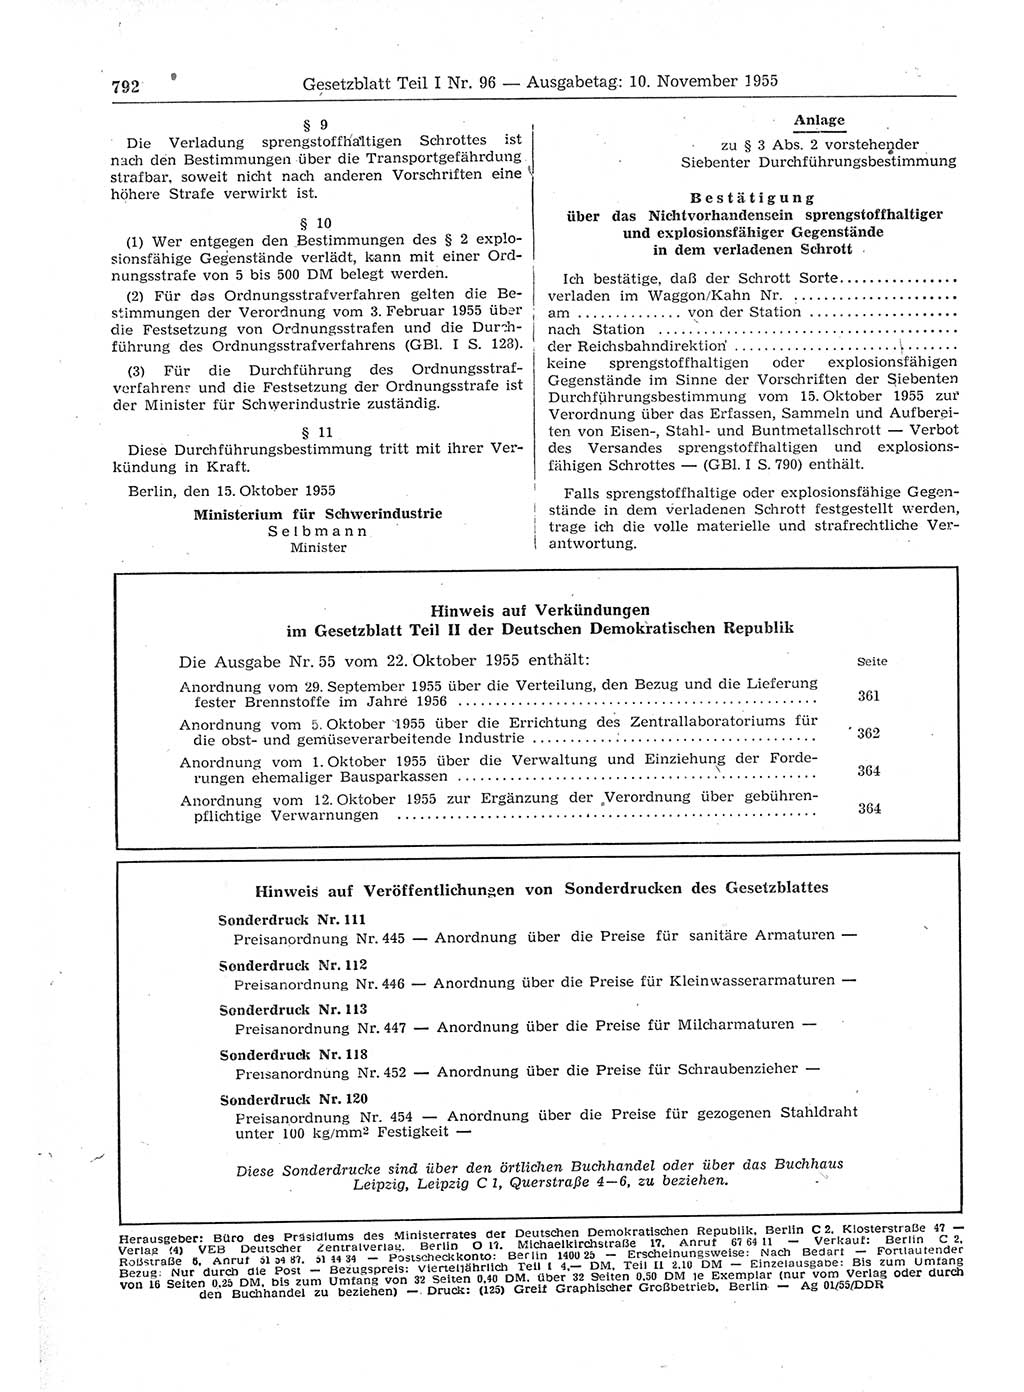 Gesetzblatt (GBl.) der Deutschen Demokratischen Republik (DDR) Teil Ⅰ 1955, Seite 792 (GBl. DDR Ⅰ 1955, S. 792)